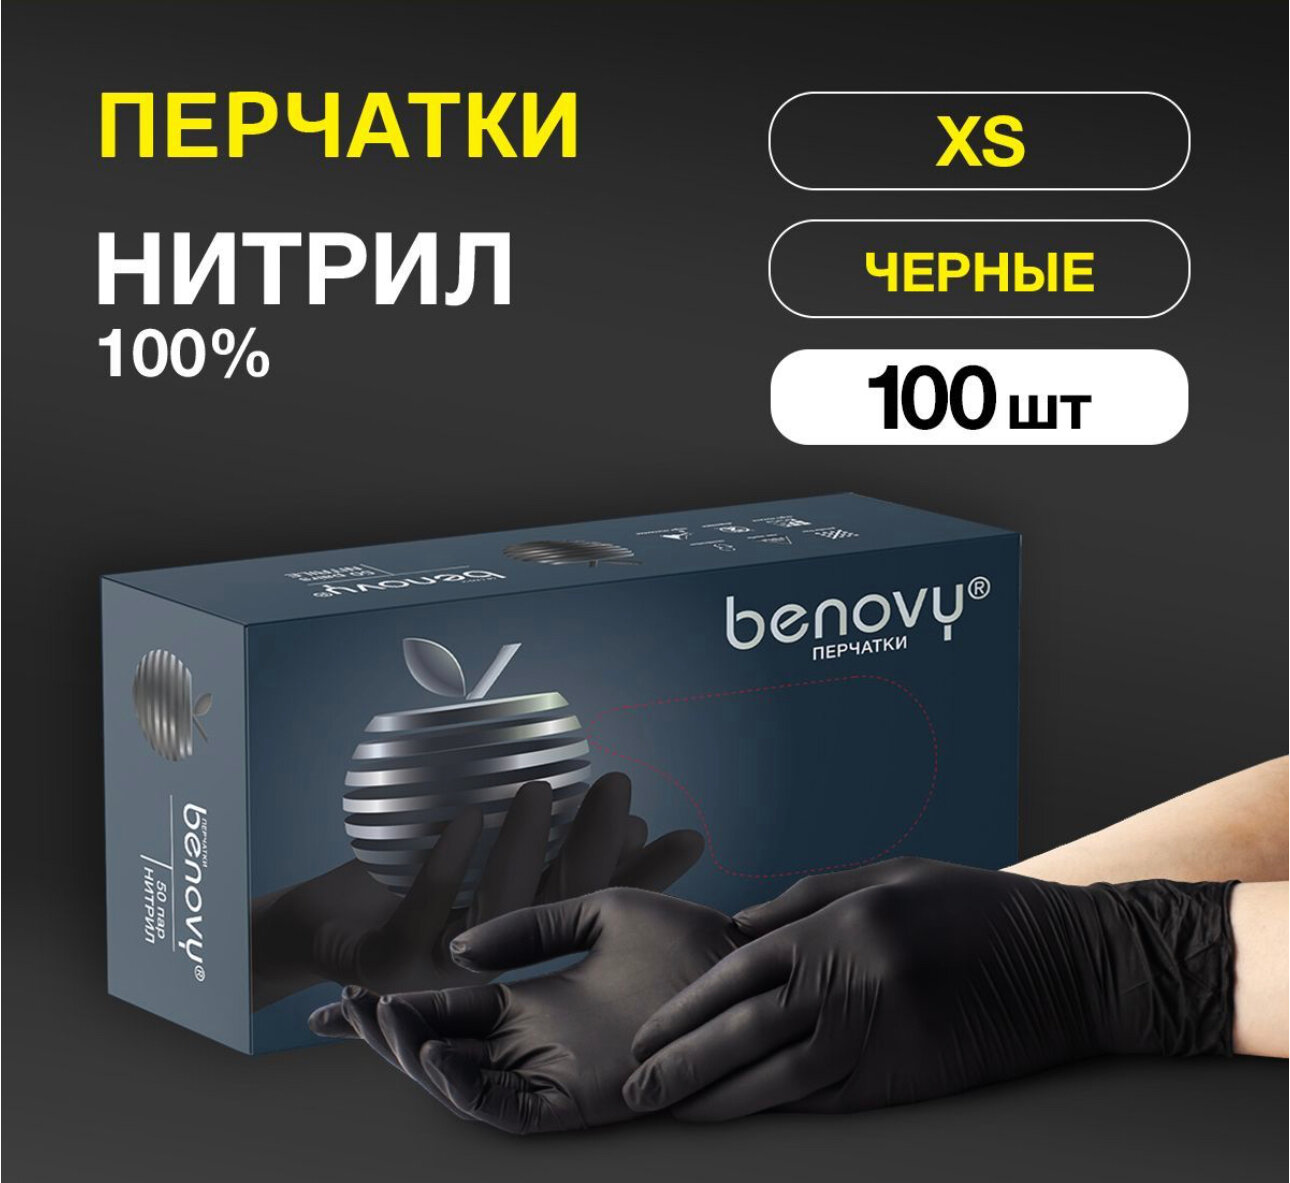 Перчатки медицинские нитриловые Benovy Nitrile Multicolour чёрные, текстурированные на пальцах, размер XS, 200 шт (100 пар), 2 уп. по 50 пар